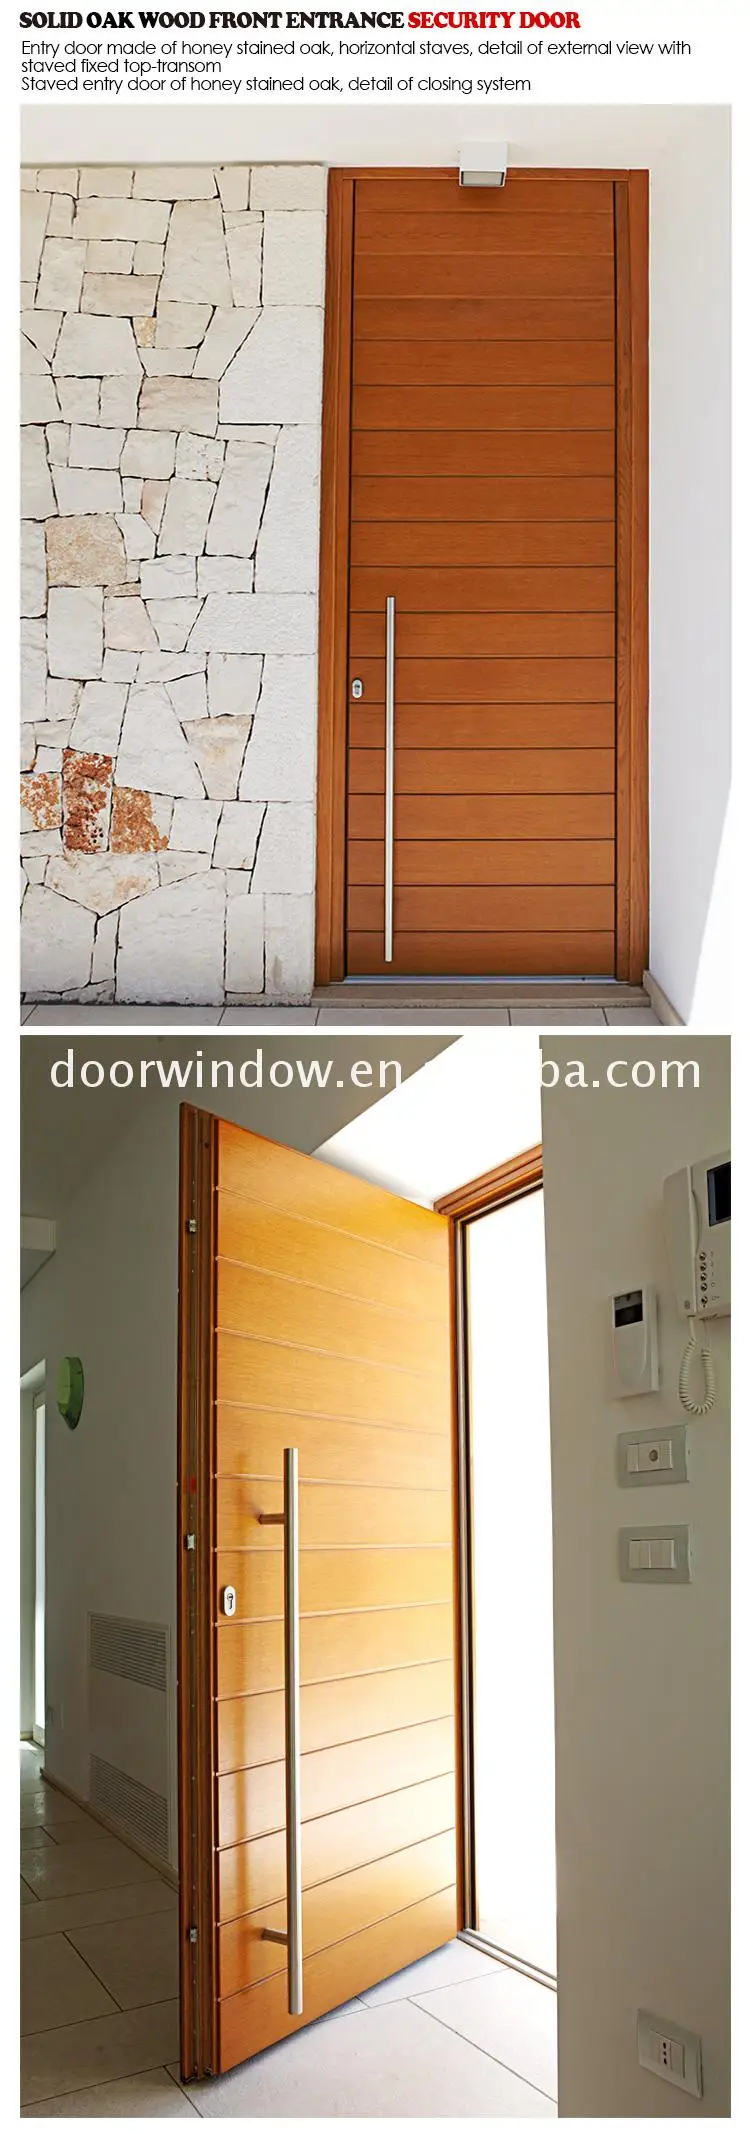 Single wooden door design swing leaf